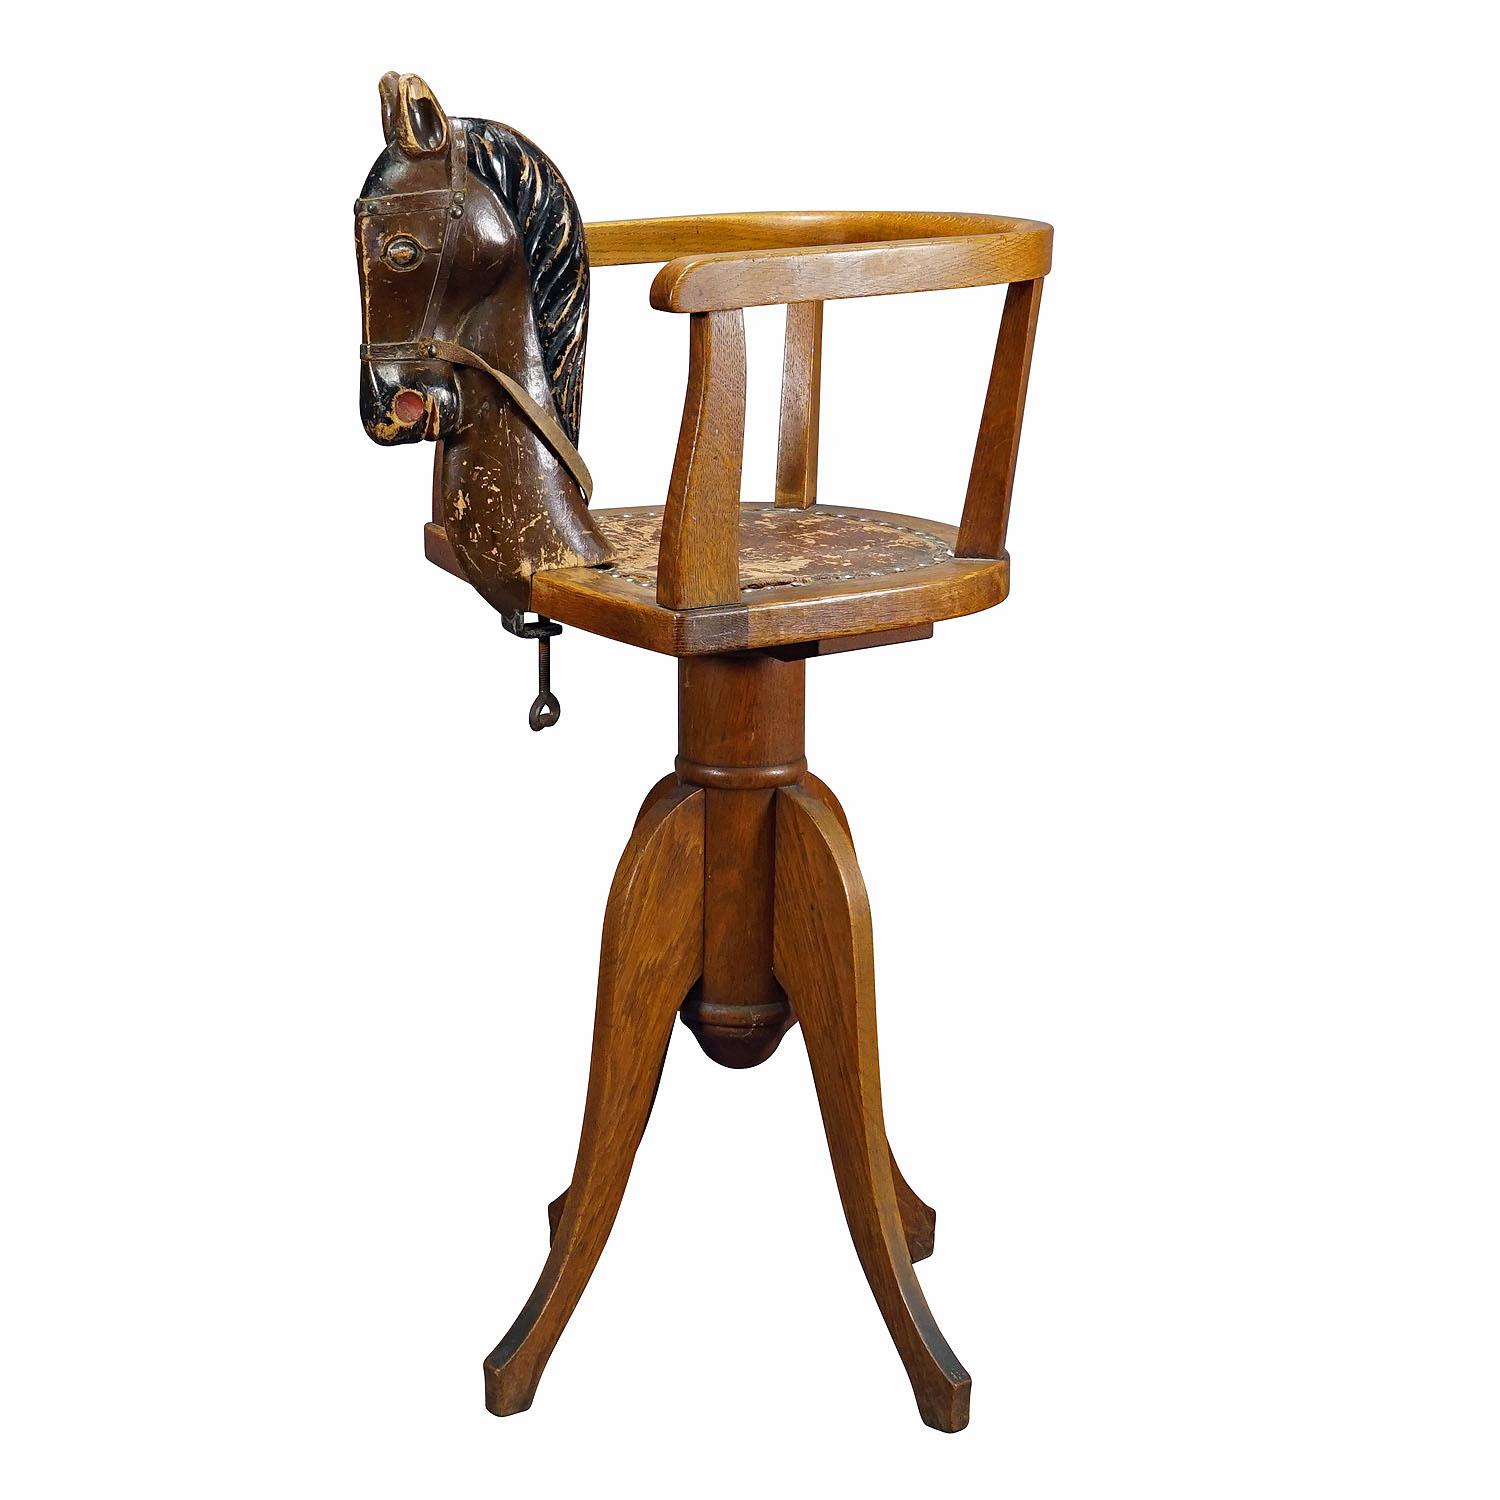 Antiker Barber-Stuhl für Kinder, Deutschland, ca. 1920er Jahre

Ein antiker Friseurstuhl für Kinder. Mit drehbarer Höhenverstellung und einem hölzernen Pferdekopf, der an der Vorderseite des Ständers befestigt ist.  den Sitz. Guter unrestaurierter